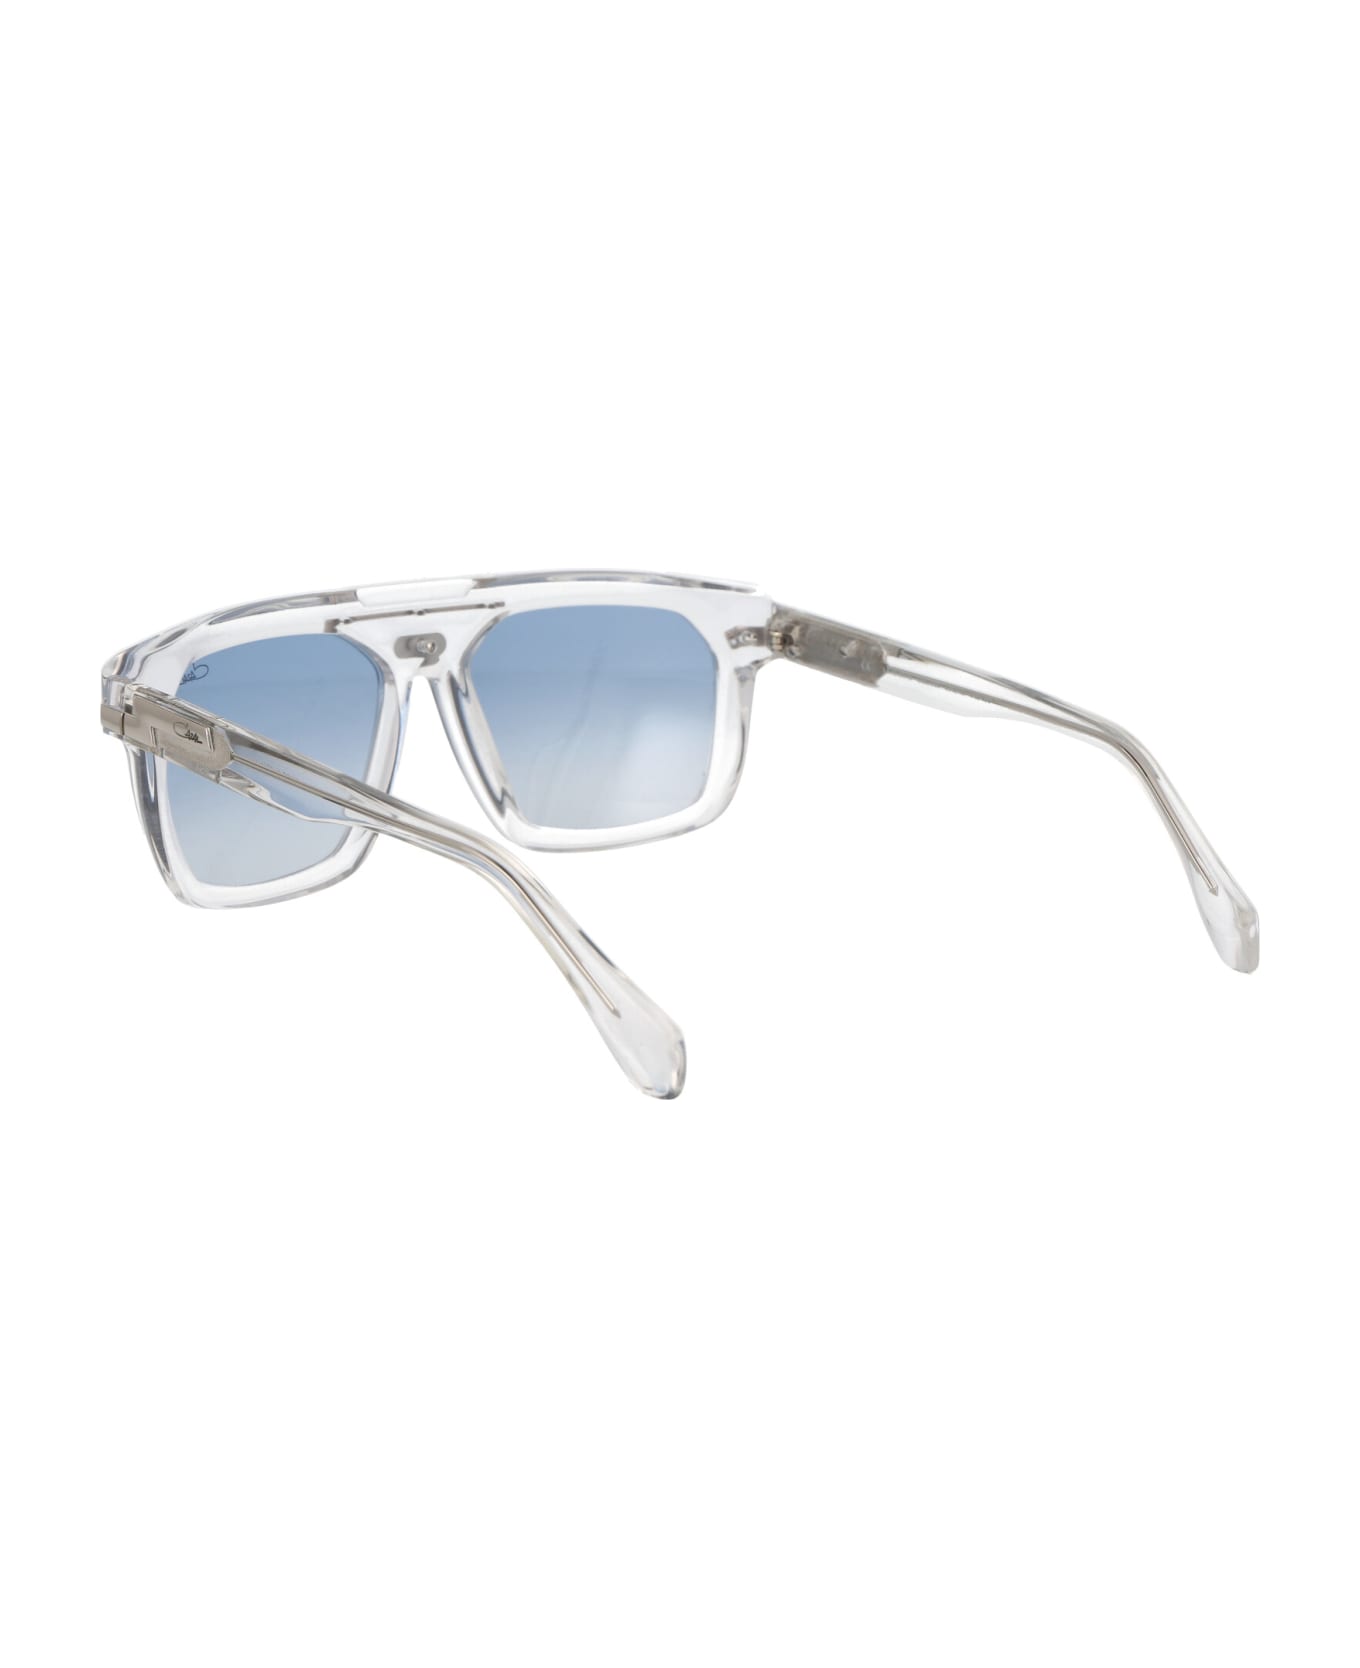 Cazal Mod. 8040 Sunglasses - 002 CRYSTAL